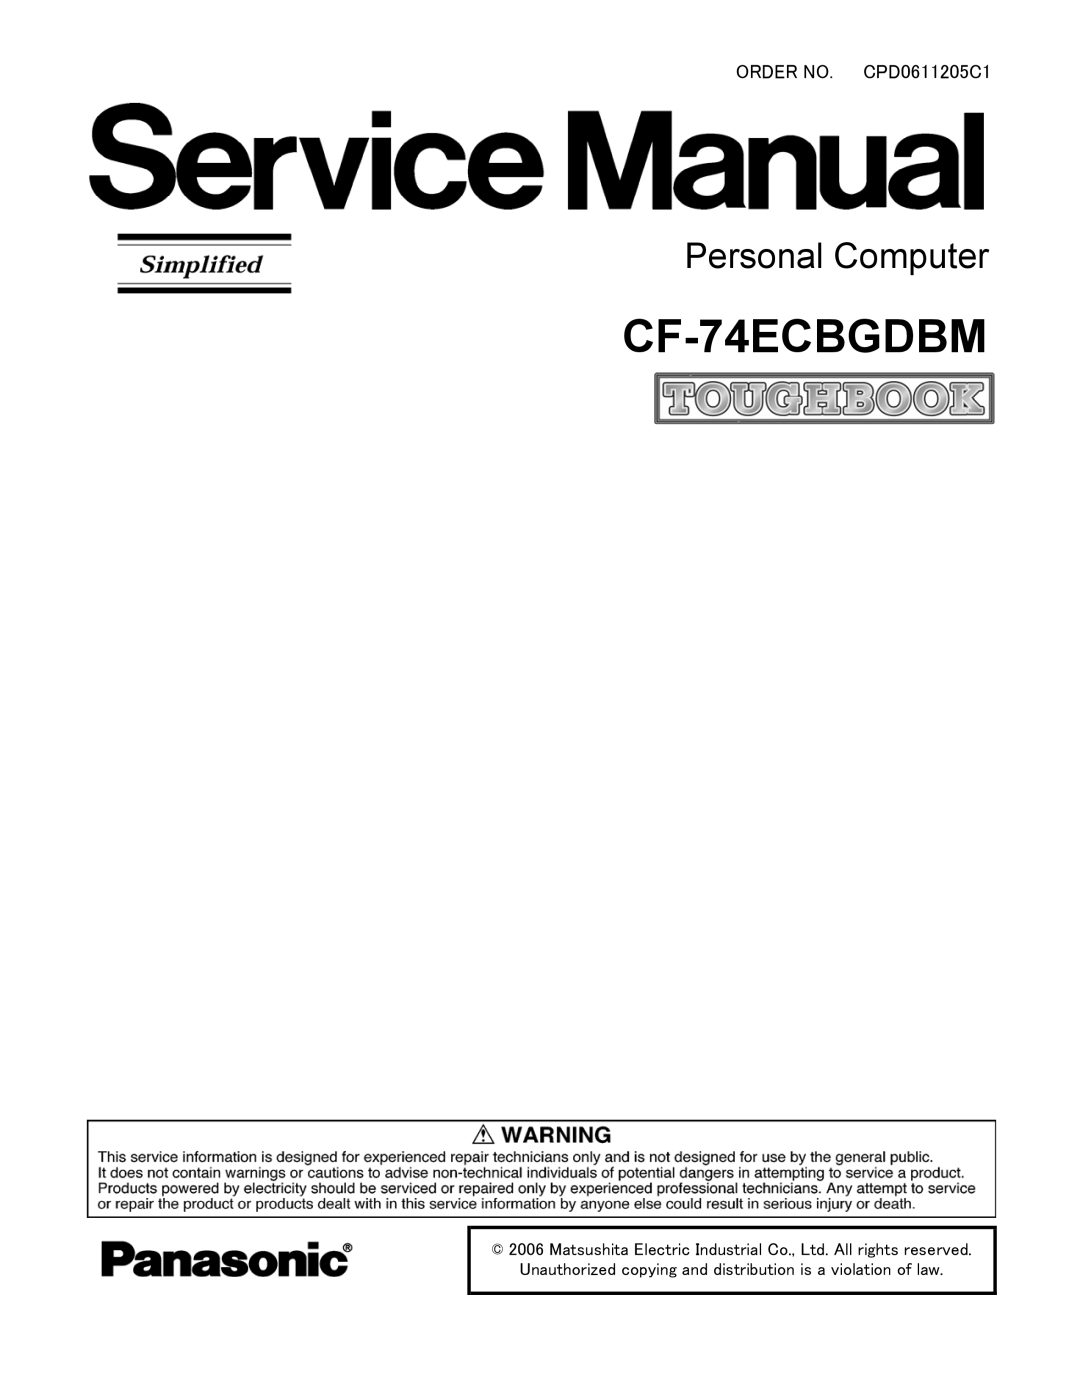 Panasonic CF-74ECBGDBM manual 